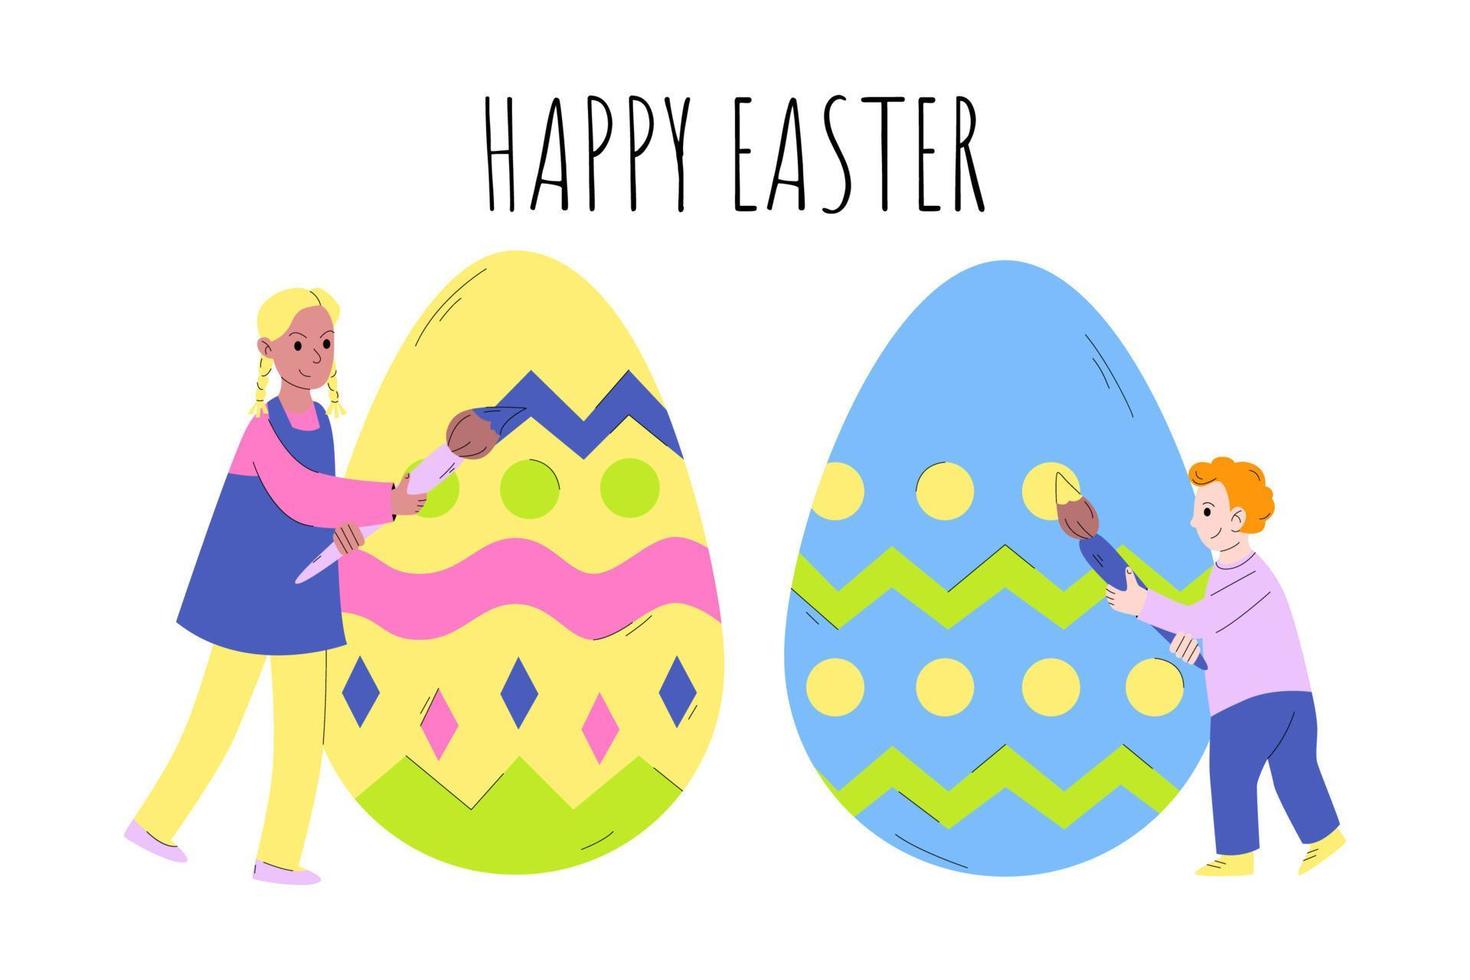 små barn målar påskägg. glad påsk. konceptet att förbereda för påsk, fira påsk med hela familjen. vektor illustration i tecknad stil.